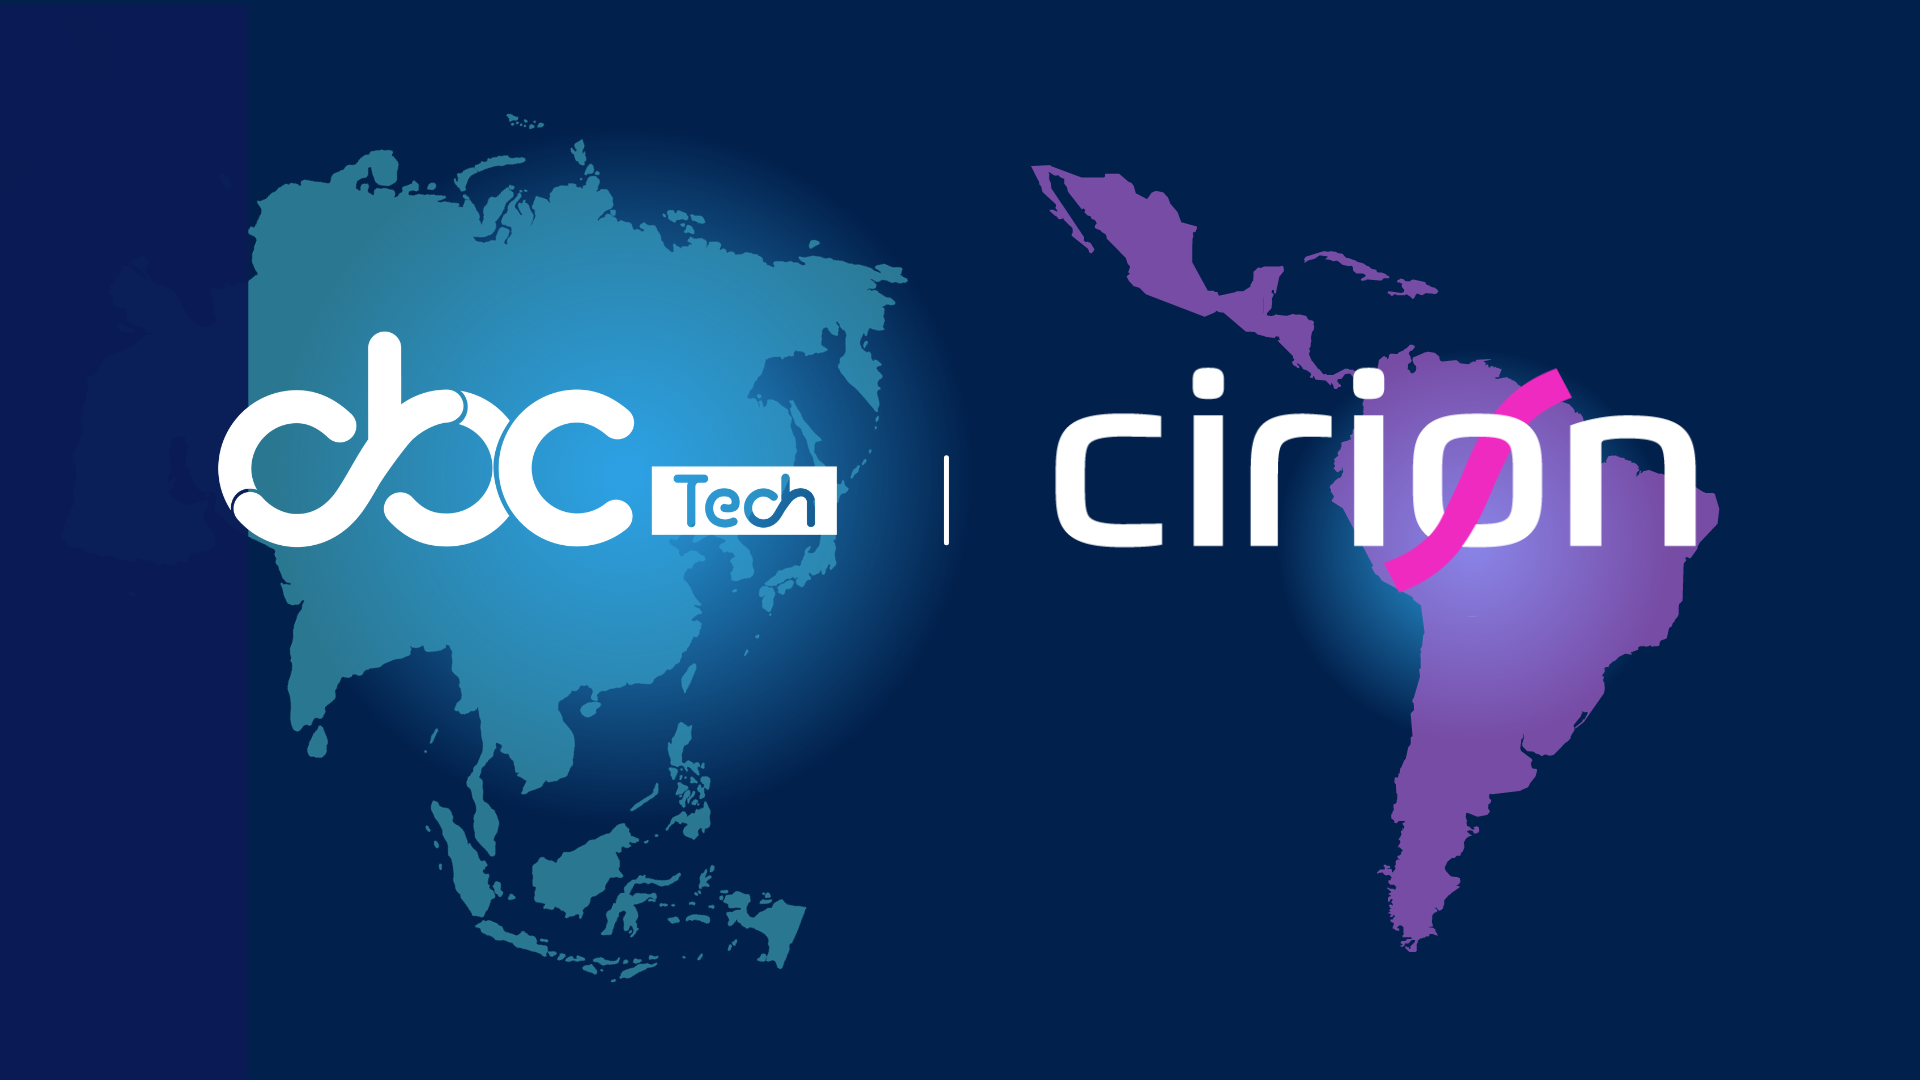 CBC Tech y Cirion Technologies forjan una alianza estratégica para expandir su presencia global